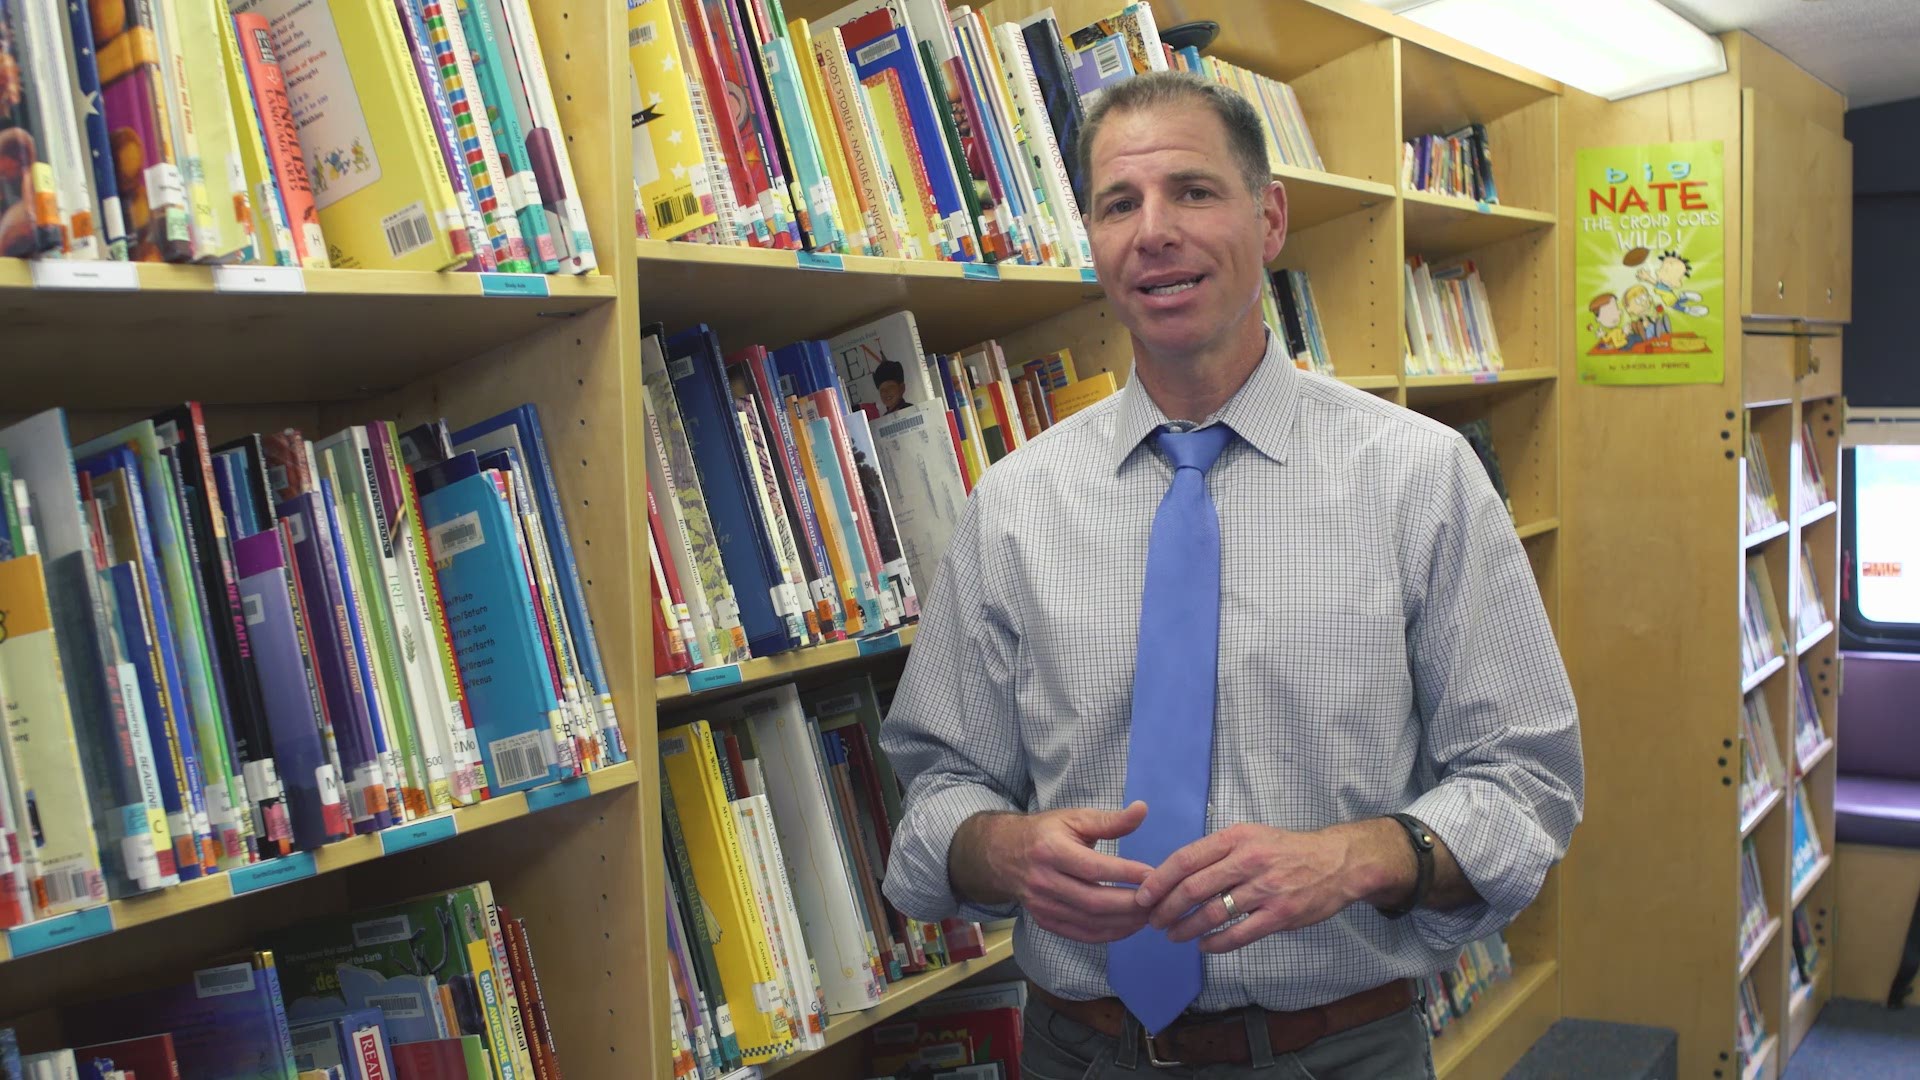 KTVB'S Brian Holmes chose Garden City Library as his nonprofit to shine a spotlight for Idaho Gives.